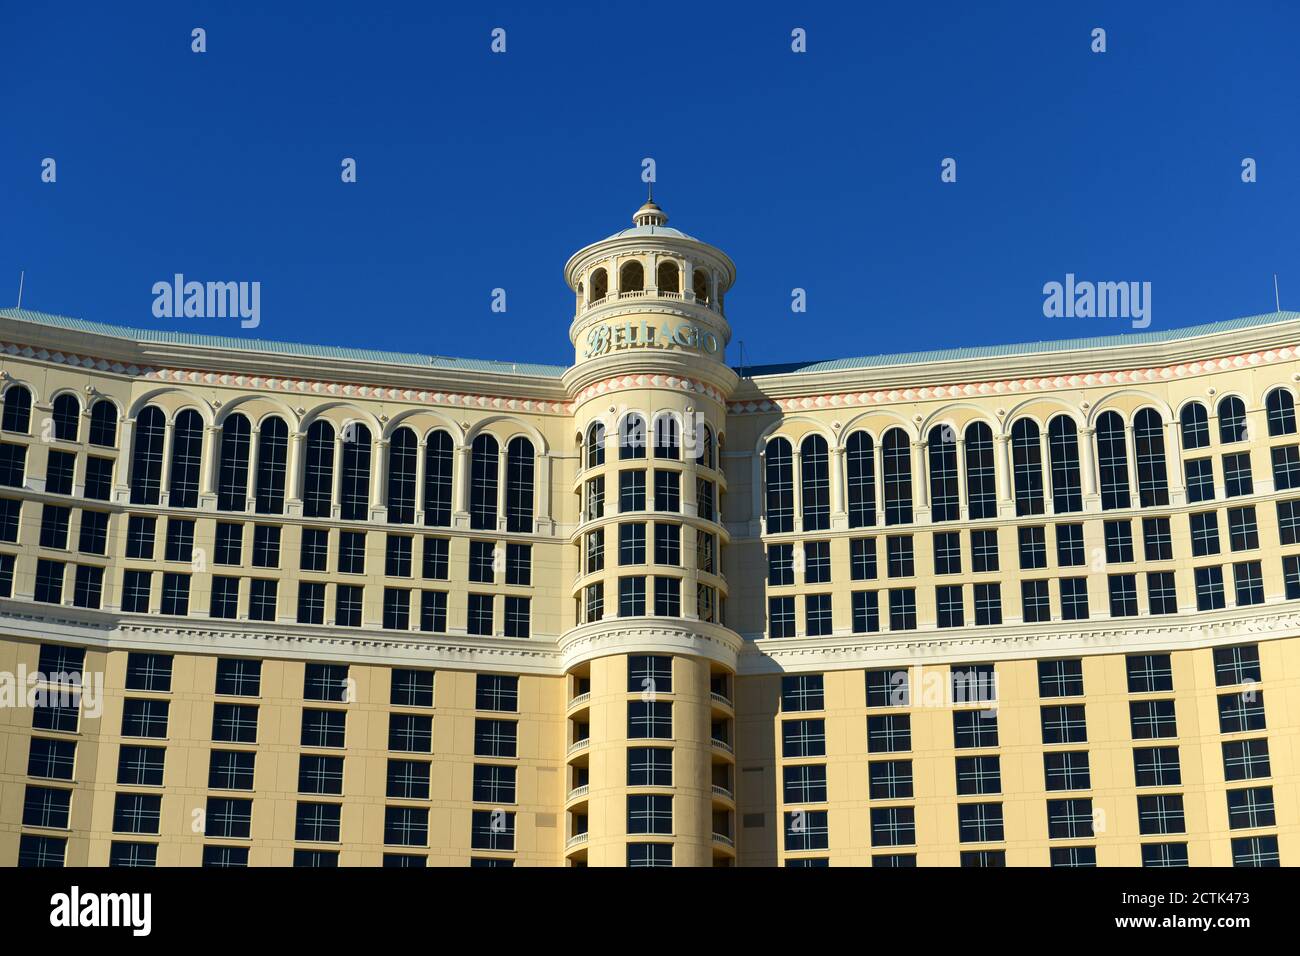 Das Bellagio ist ein luxuriöses Resort und Kasino am Las Vegas Strip in Las Vegas, Nevada, USA. Das Hotel gehört MGM Resorts International. Stockfoto